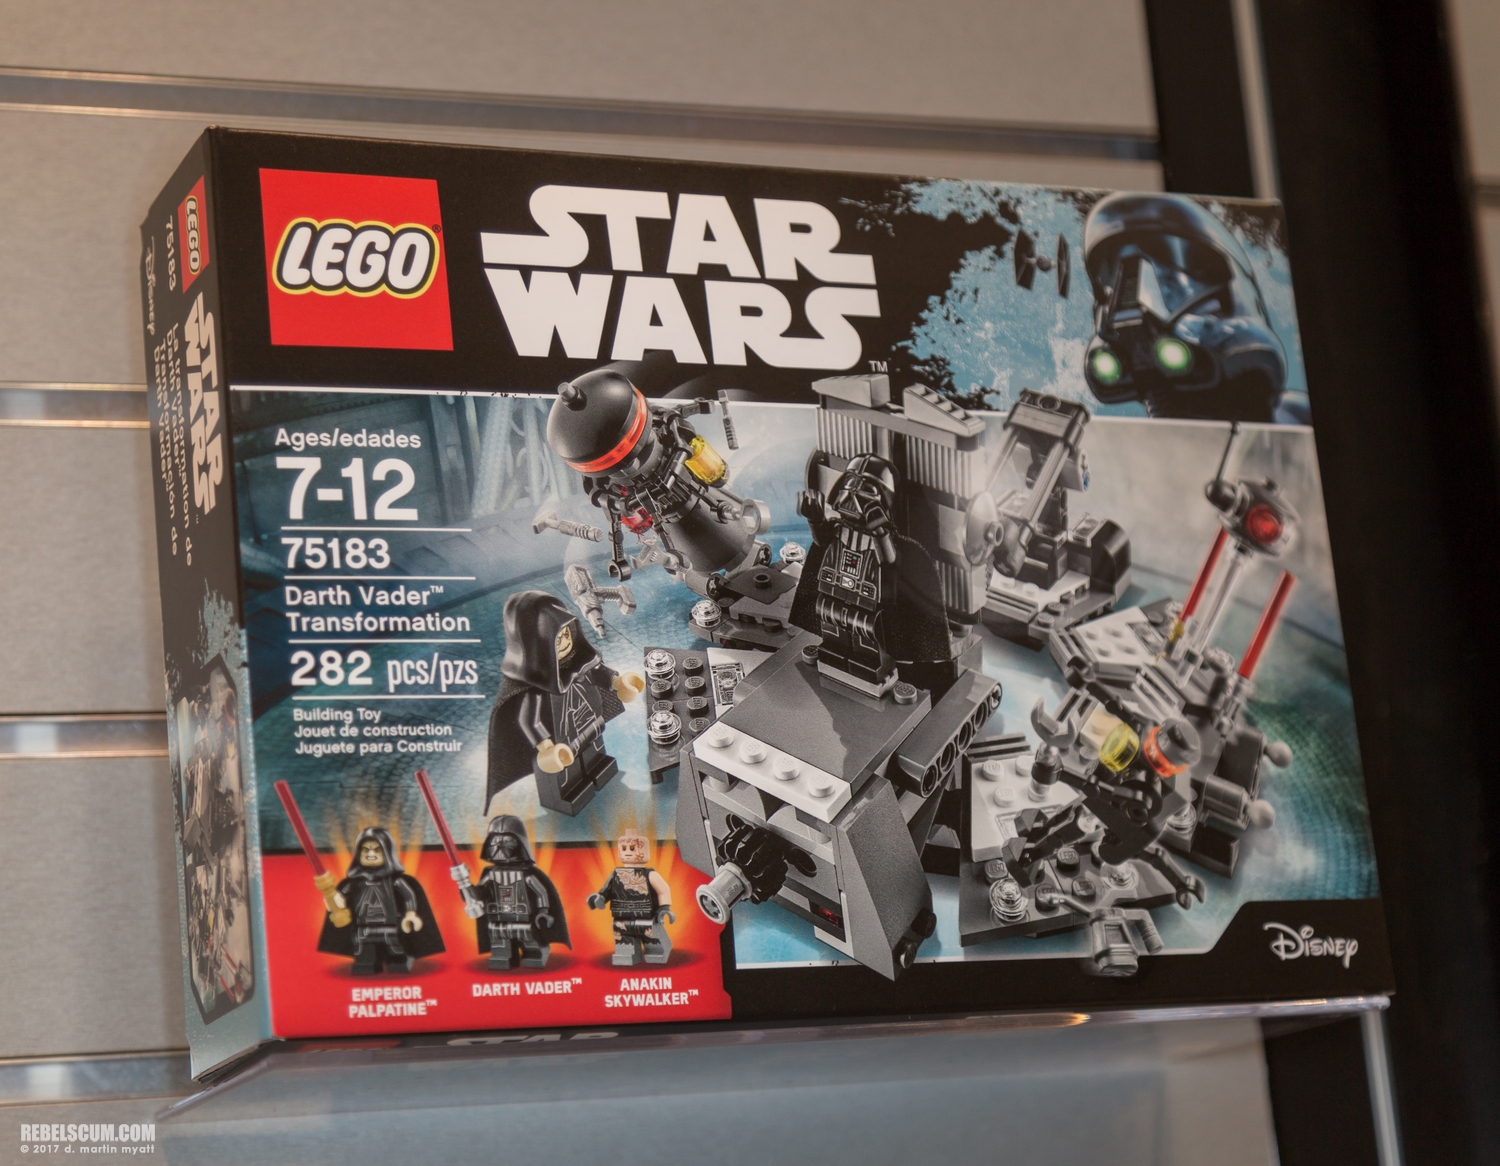 LEGO-2017-International-Toy-Fair-Star-Wars-110.jpg